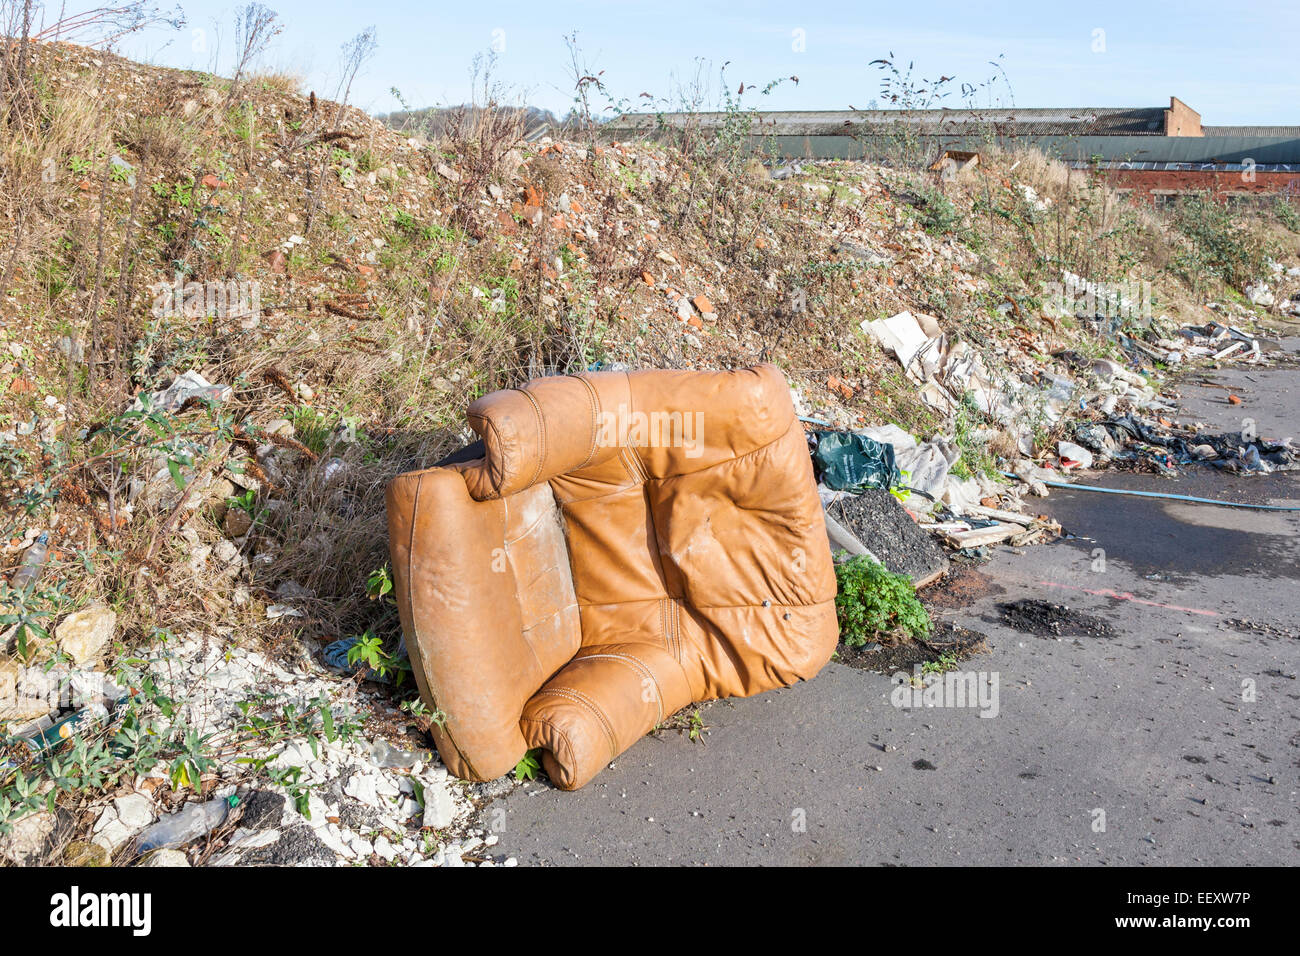 Les décharges sauvages. Le déversement illégal de déchets, un fauteuil en cuir et autres déchets sur un trottoir à la périphérie d'une ville. Nottingham, Angleterre, RU Banque D'Images